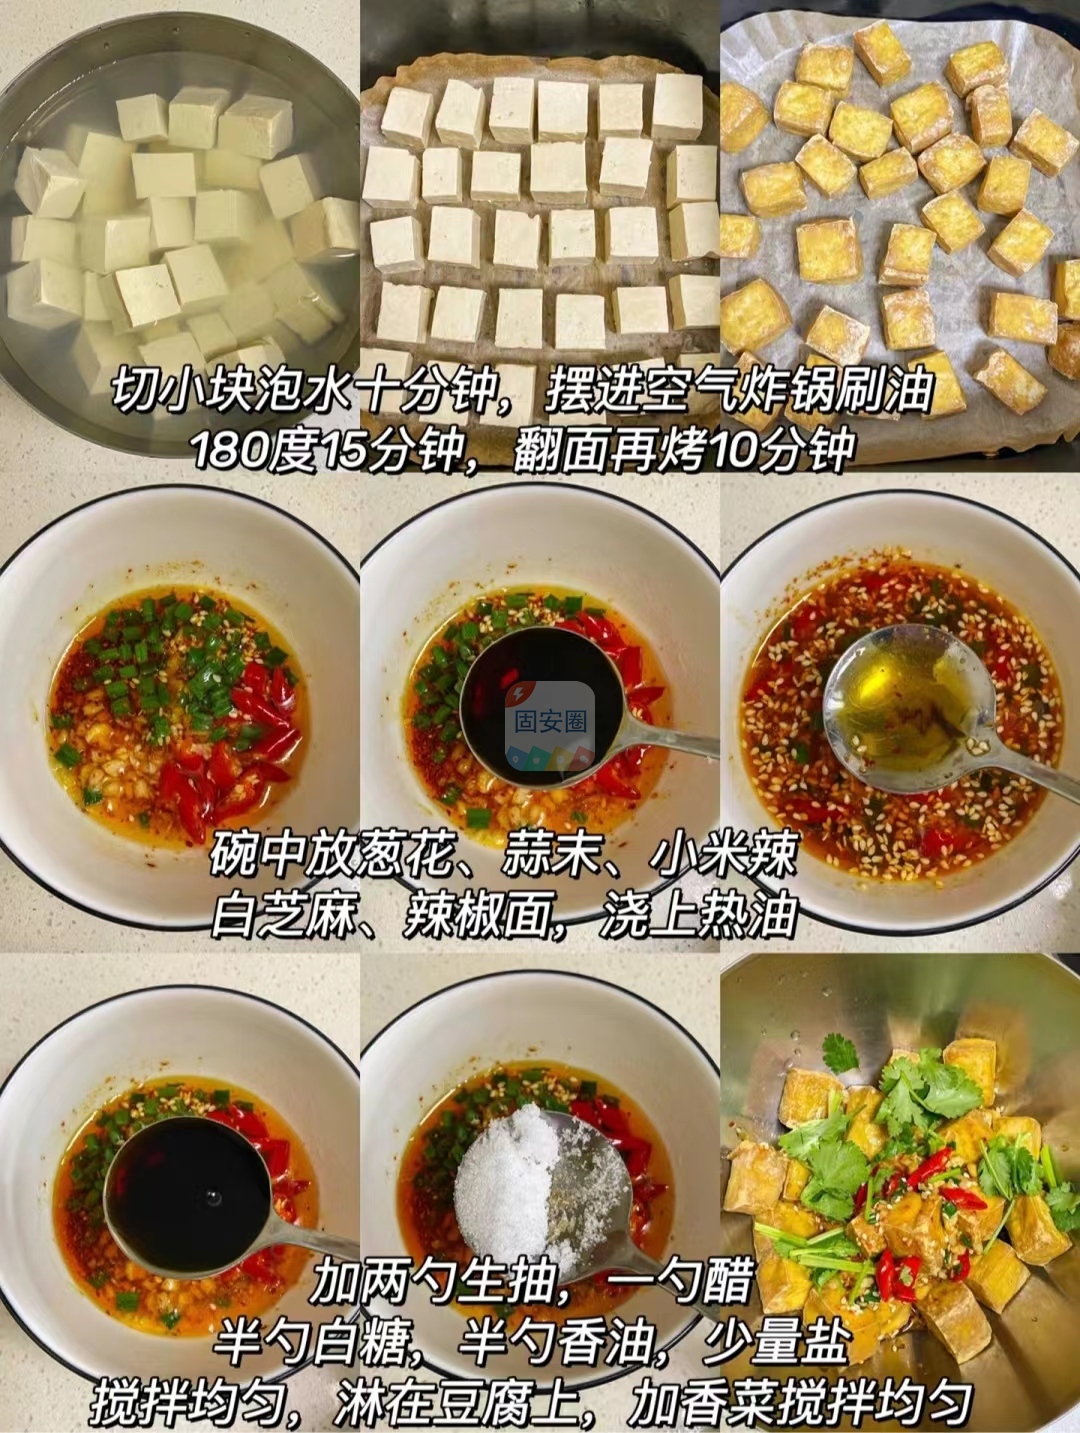 豆腐这样做太好吃了，怎么以前没有发现这个做法1012 作者:中国大厨 帖子ID:197210 豆腐,这样,好吃,怎么,以前